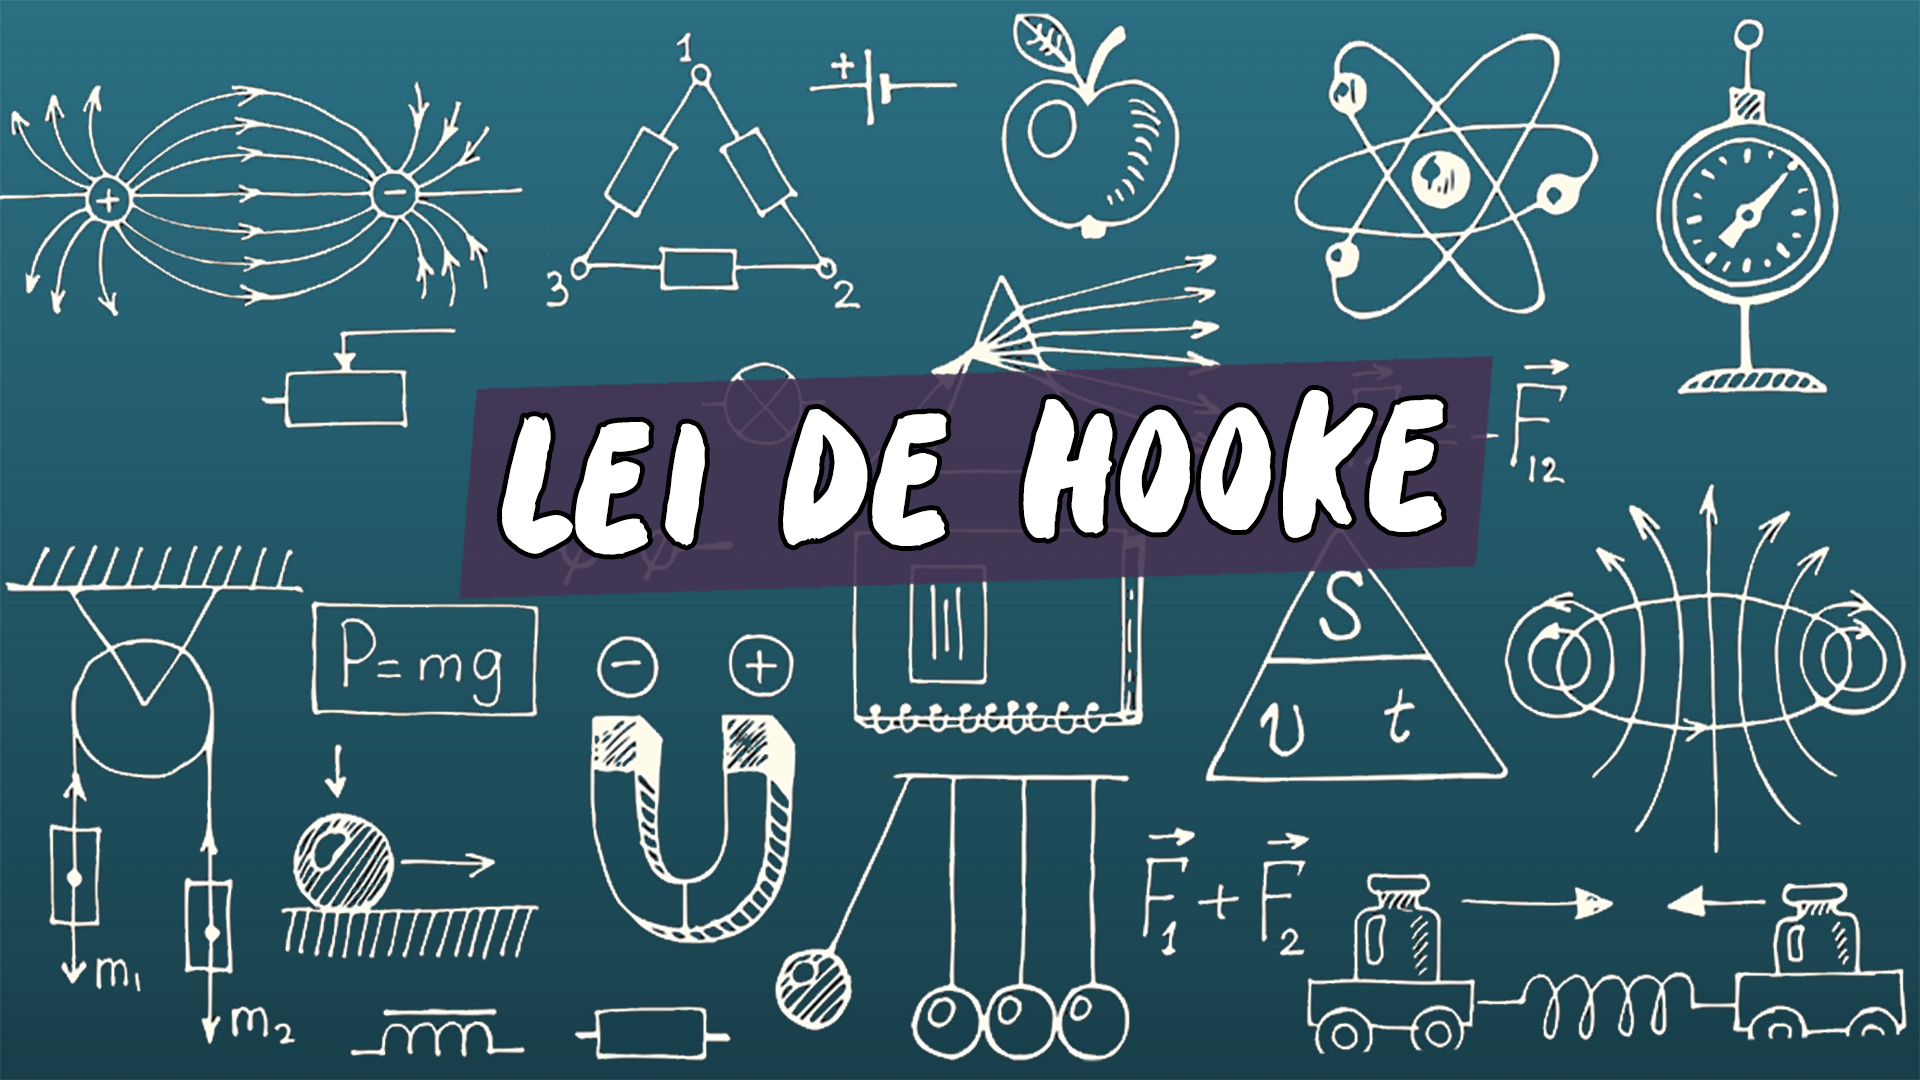 "Lei de Hooke" escrito sobre ilustração de diversos símbolos matemáticos